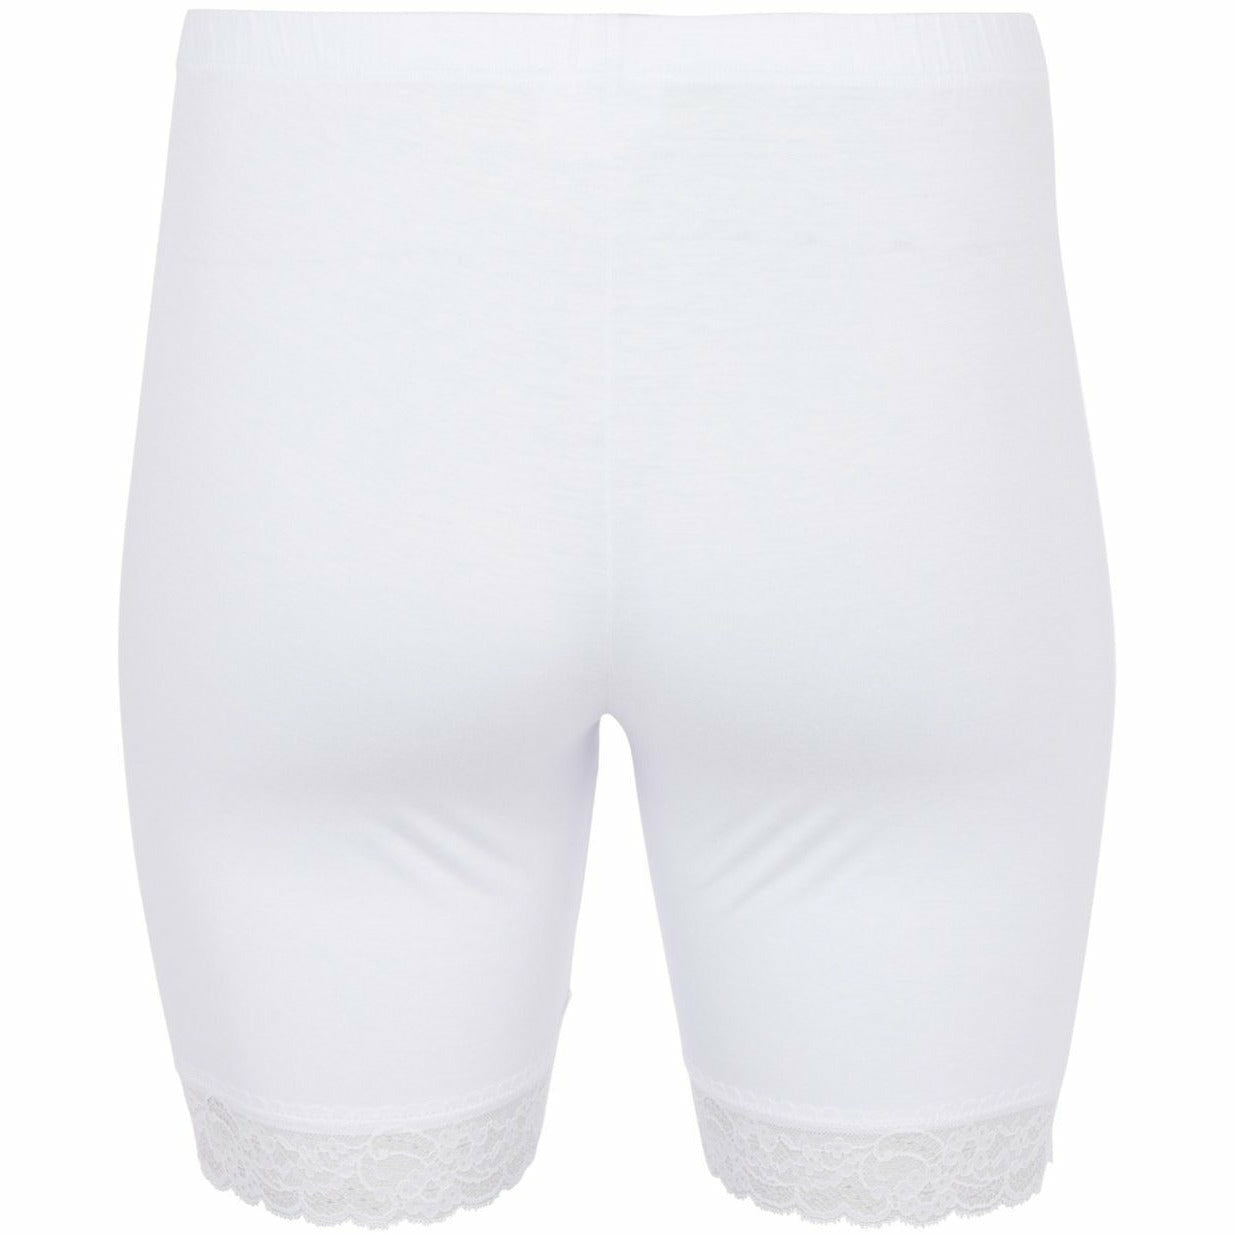 Zizzi Lace Trim Shorts - White